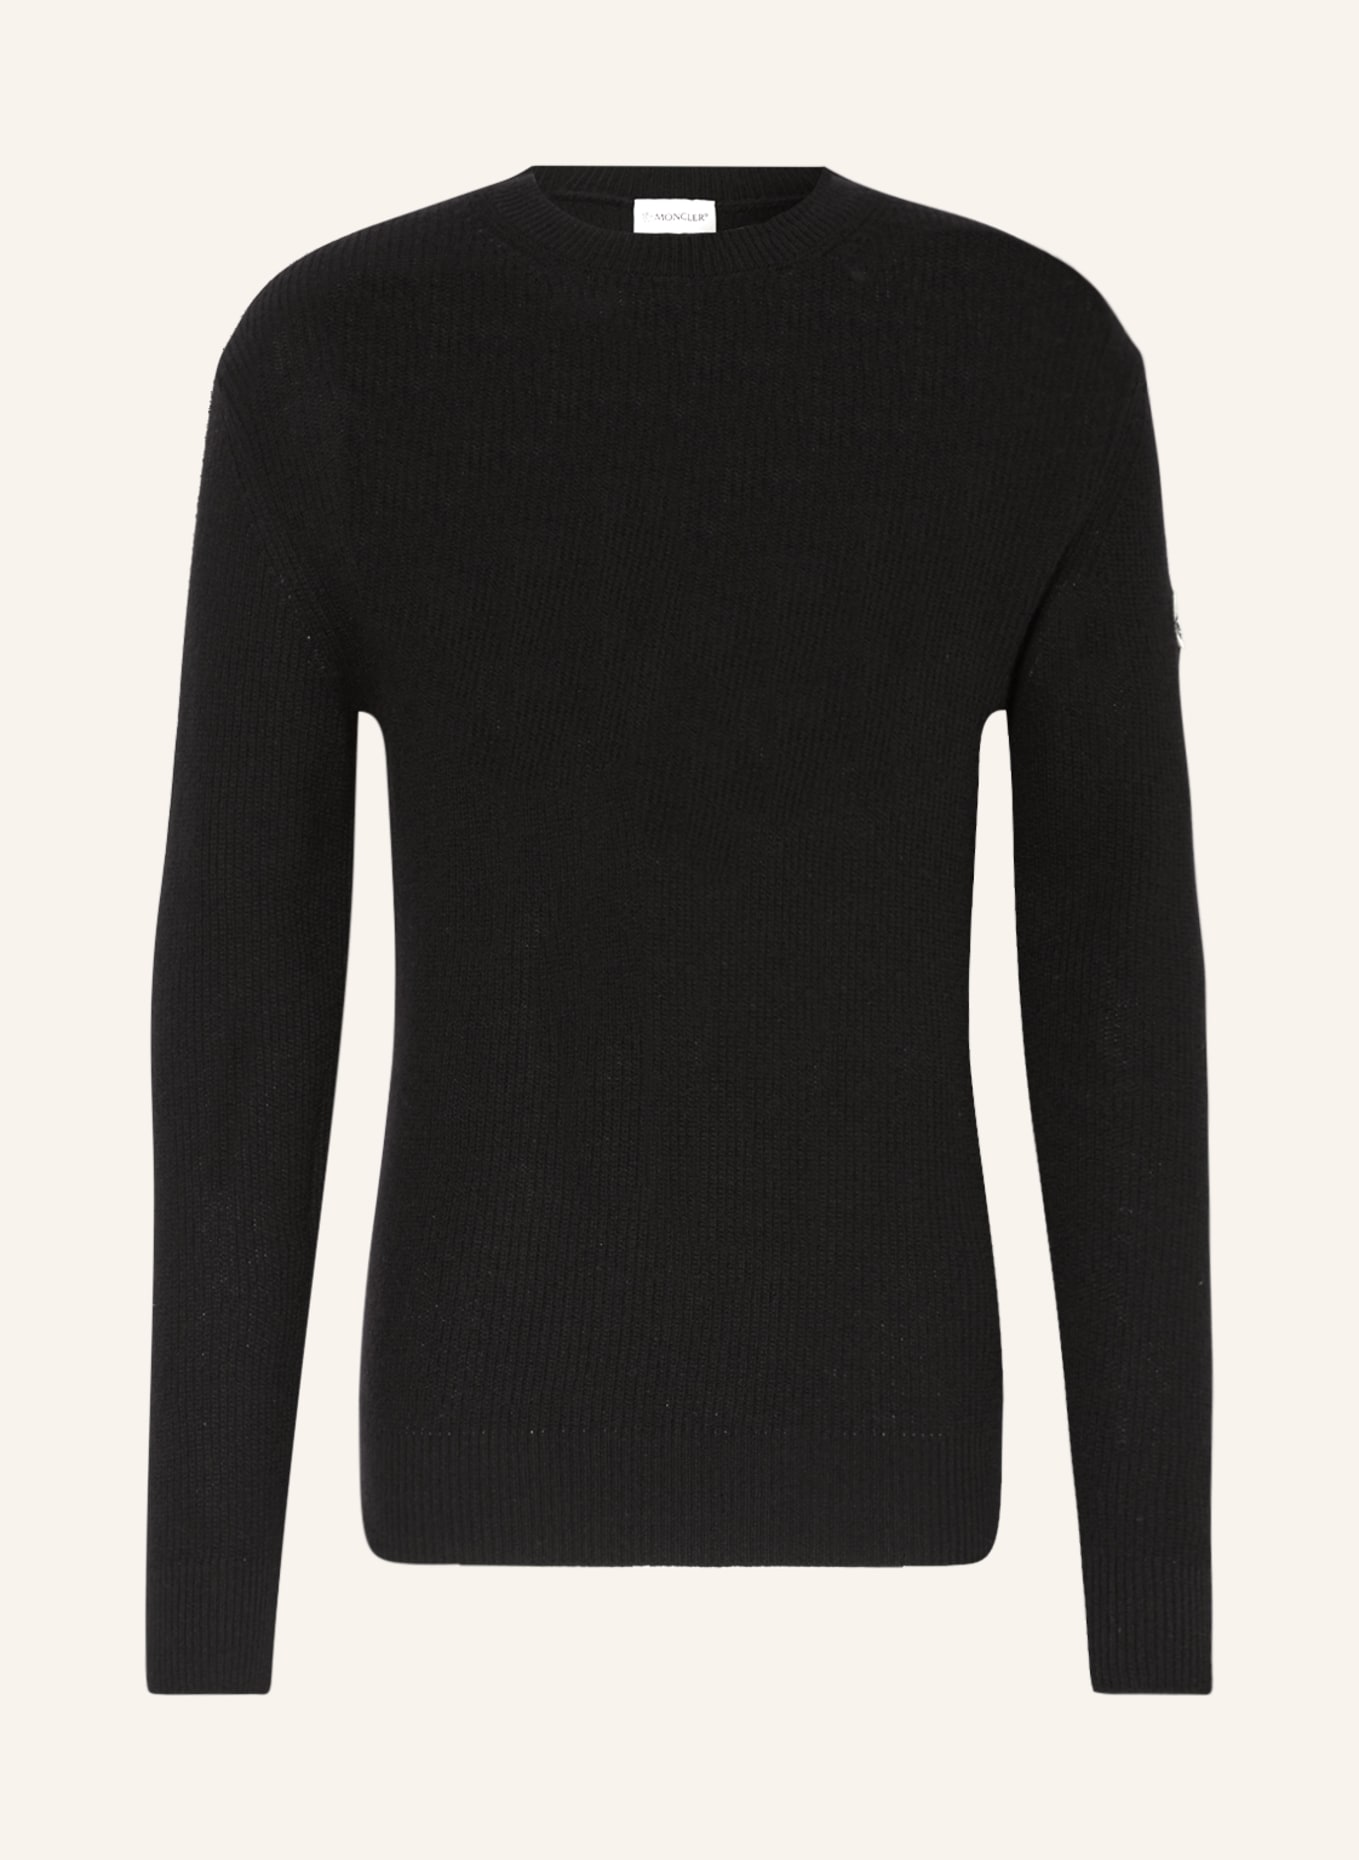 MONCLER Pullover mit Cashmere, Farbe: SCHWARZ (Bild 1)